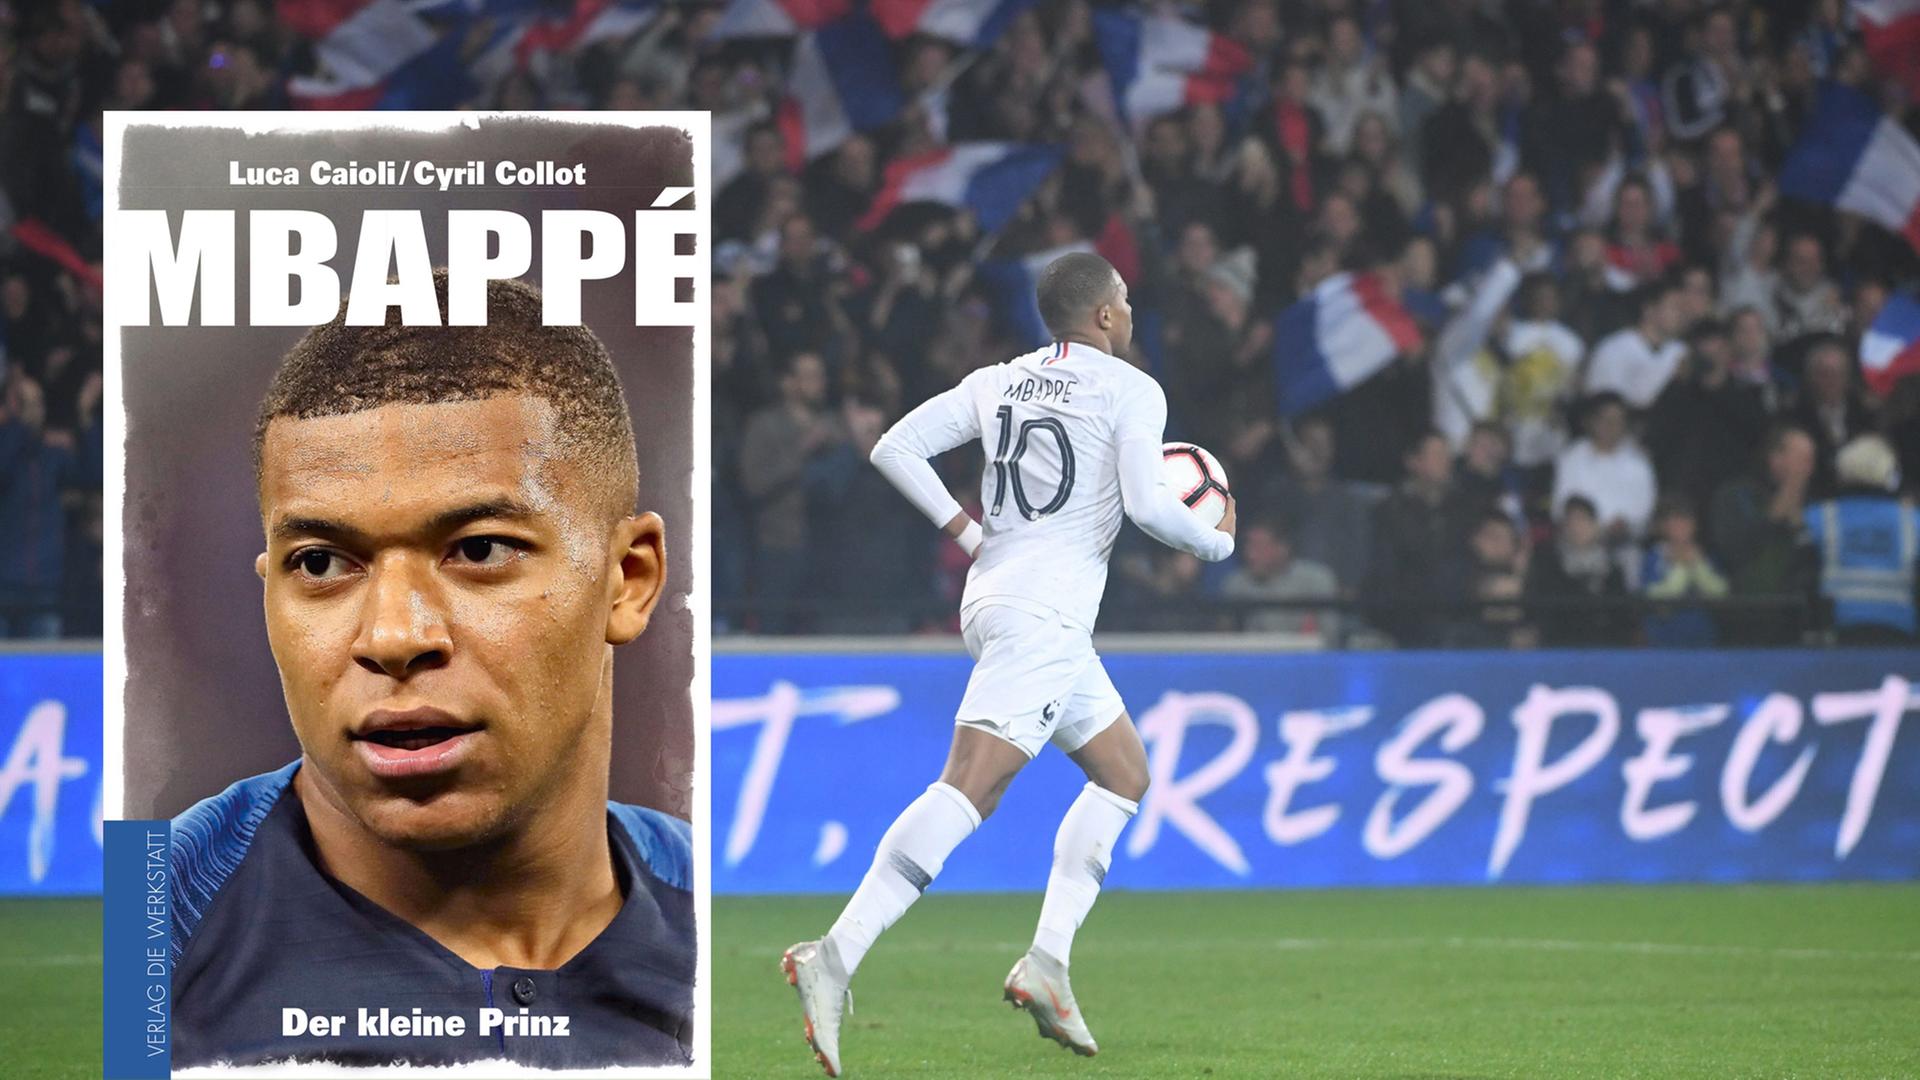 Im Vordergrund ist das Cover des Buches "Mbappé. Der kleine Prinz". Im Hintergrund ist der Fußballer